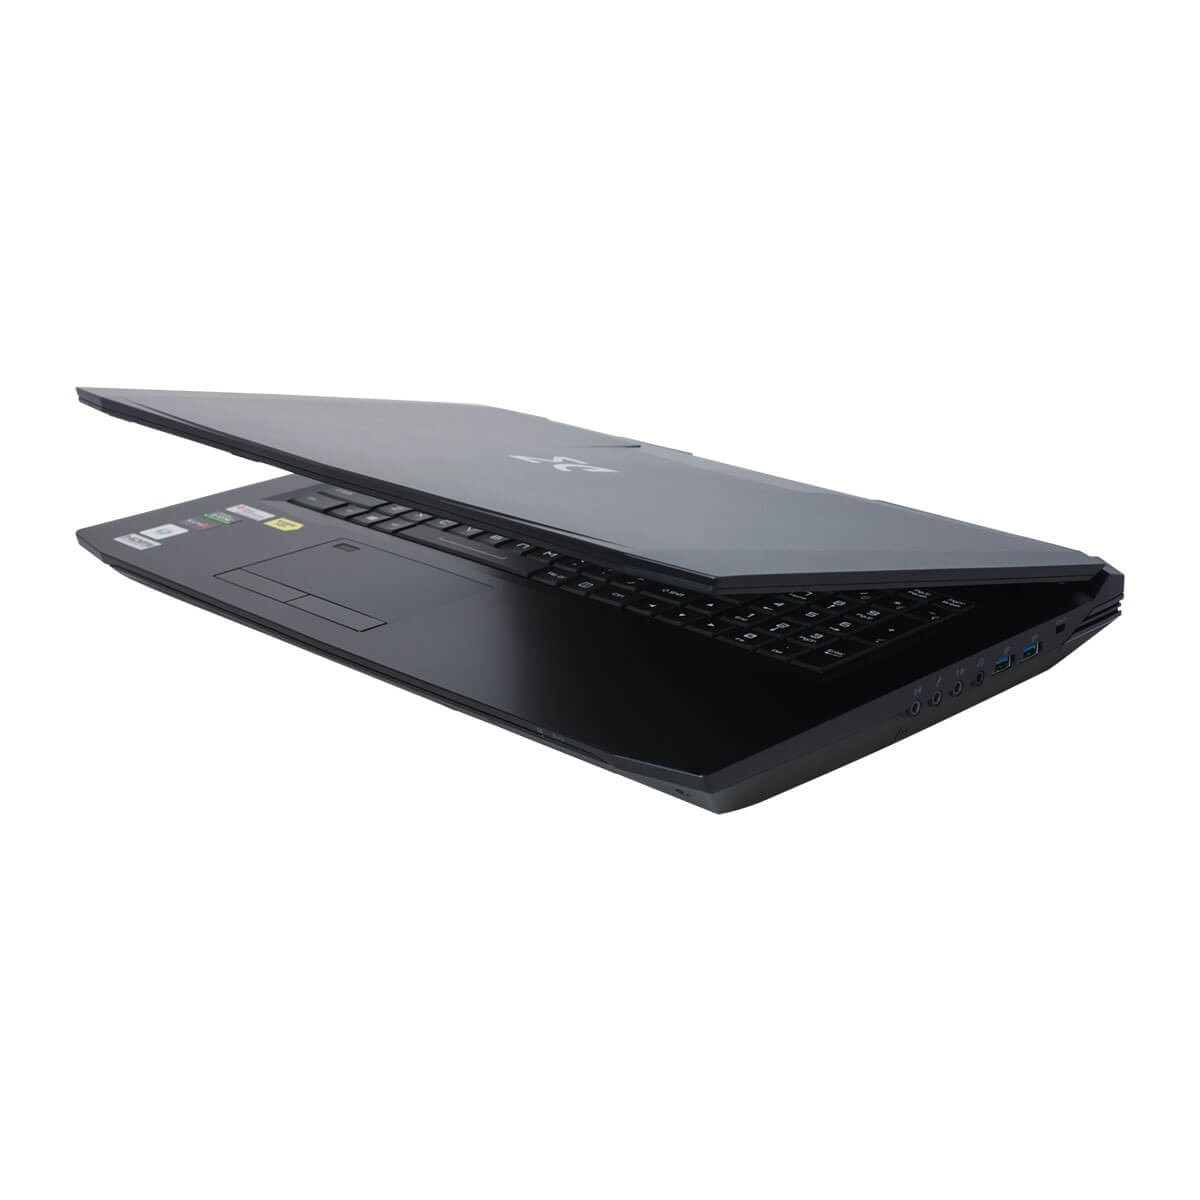 Laptop Clevo P775 Cu Procesor Intel Core I7 9700k 3 6 Ghz 17 3 Fhd Ips G Sync 16 Gb 480 Gb Ssd Nvidia Geforce Rtx 60 6gb Gddr6 Free Dos Dark Grey Emag Ro